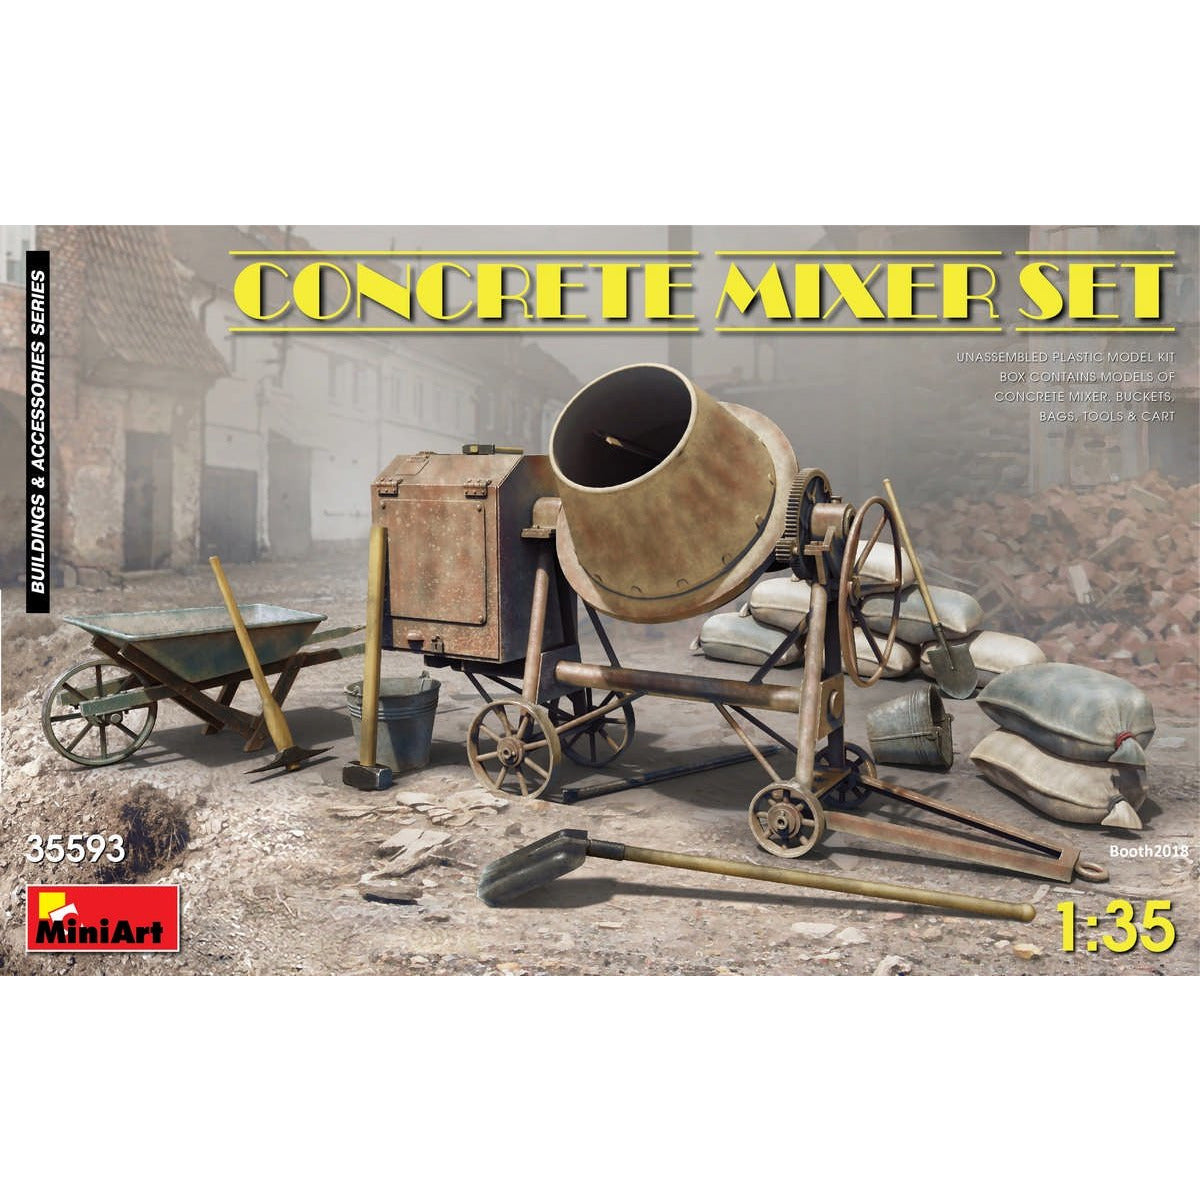 Concrete Mixer Set #35593 1/35 Scenery Kit by MiniArt